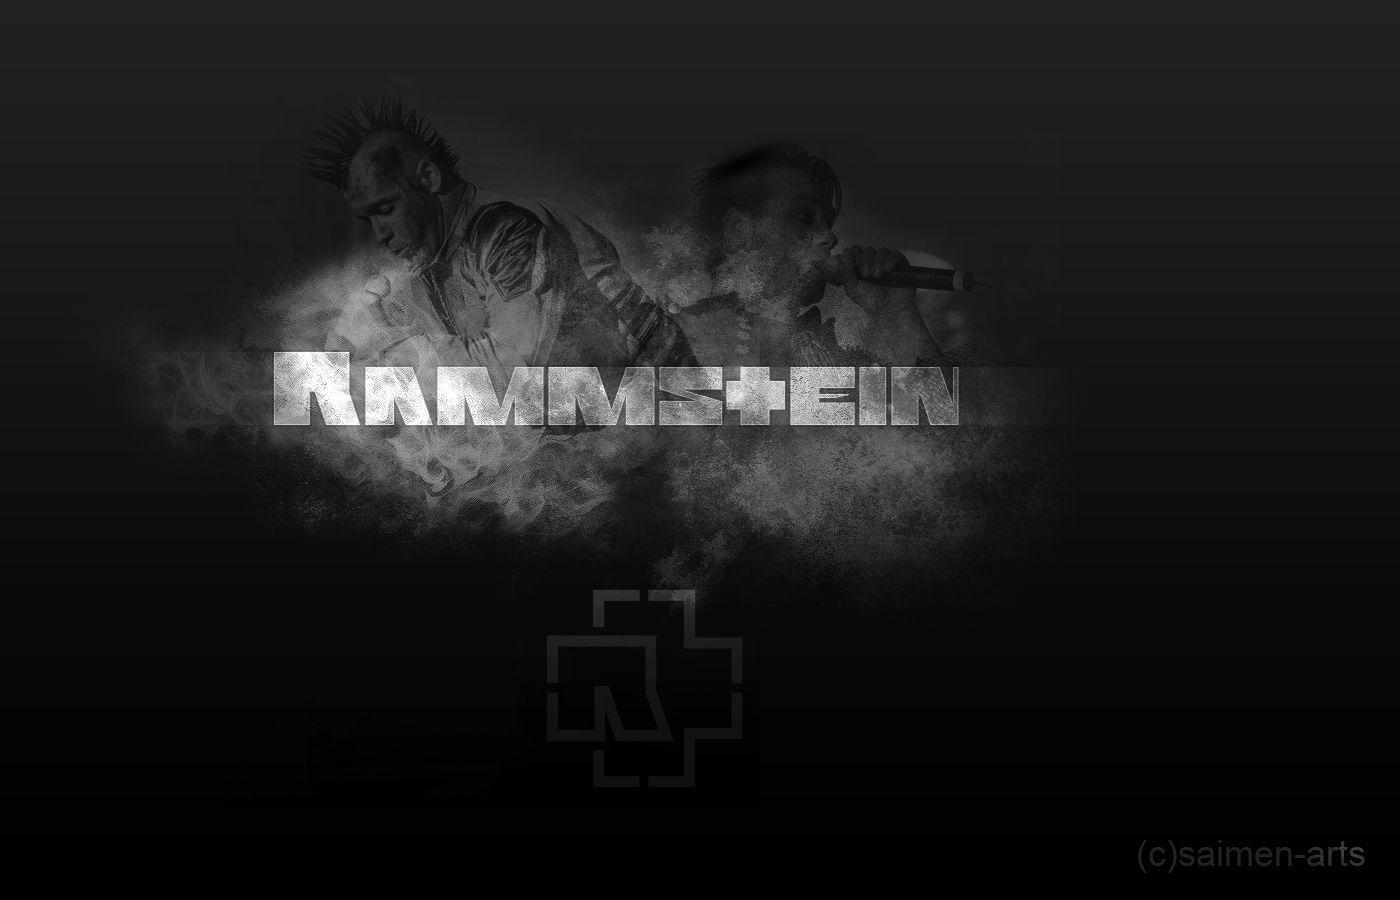 Rammstein Wallpaper, 48 Full HQ Definition Rammstein Background